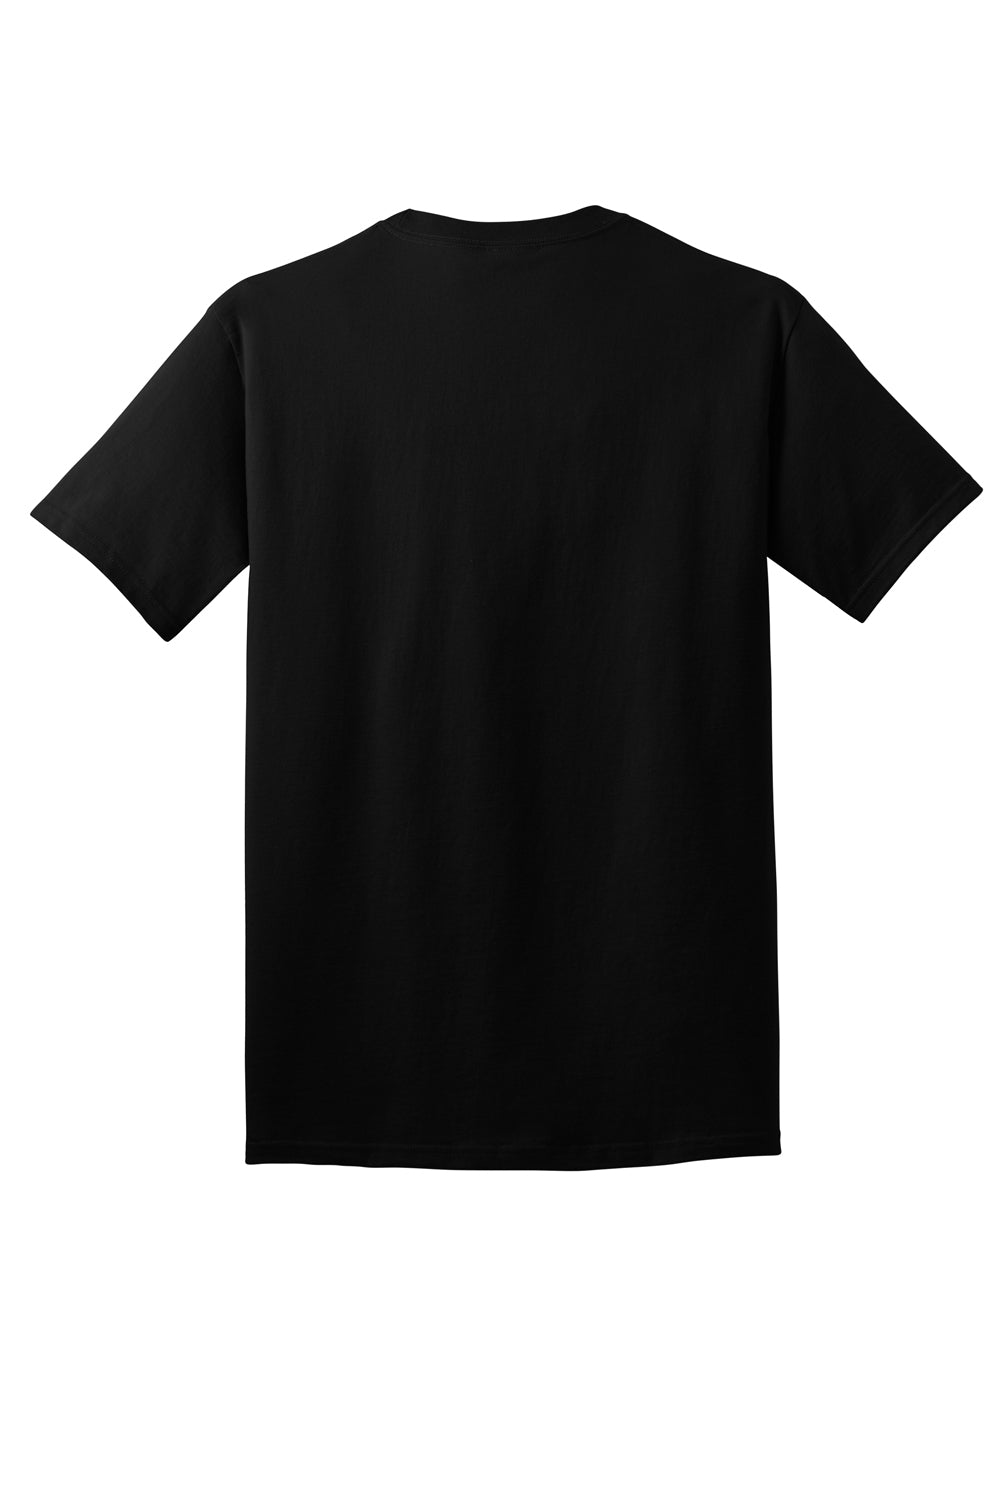 Port & Company PC54DTG Core Cotton DTG Short Sleeve Crewneck T-Shirt Jet Black Flat Back